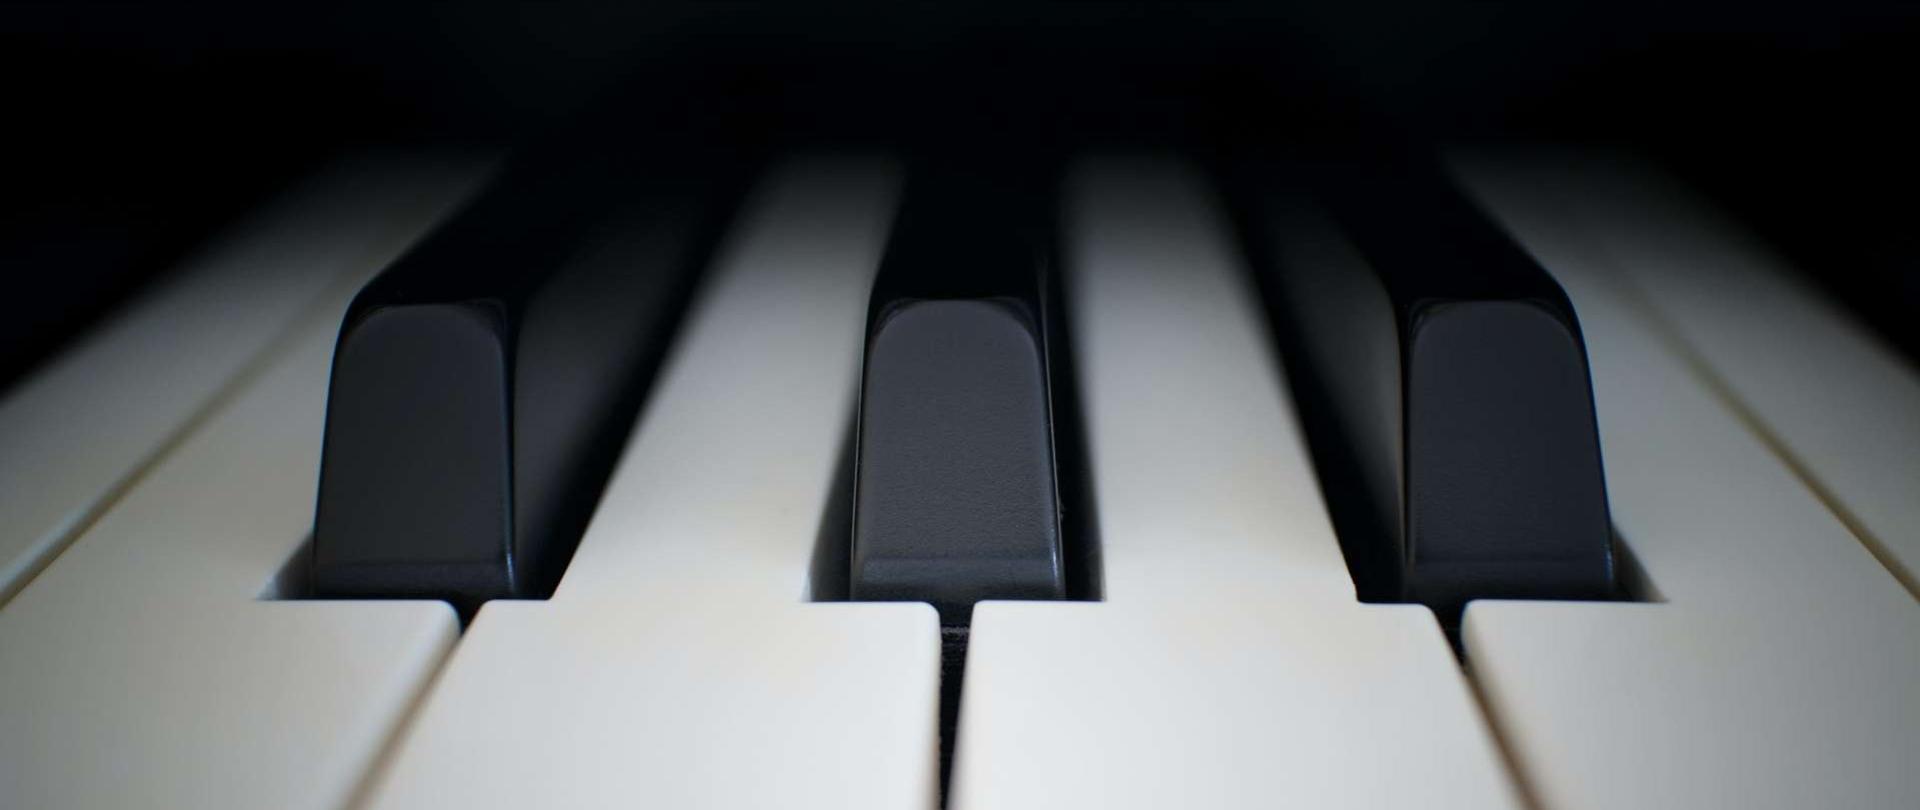 zdjęcie przedstawiające kilka białych i czarnych klawiszy klawiatury fortepianowej